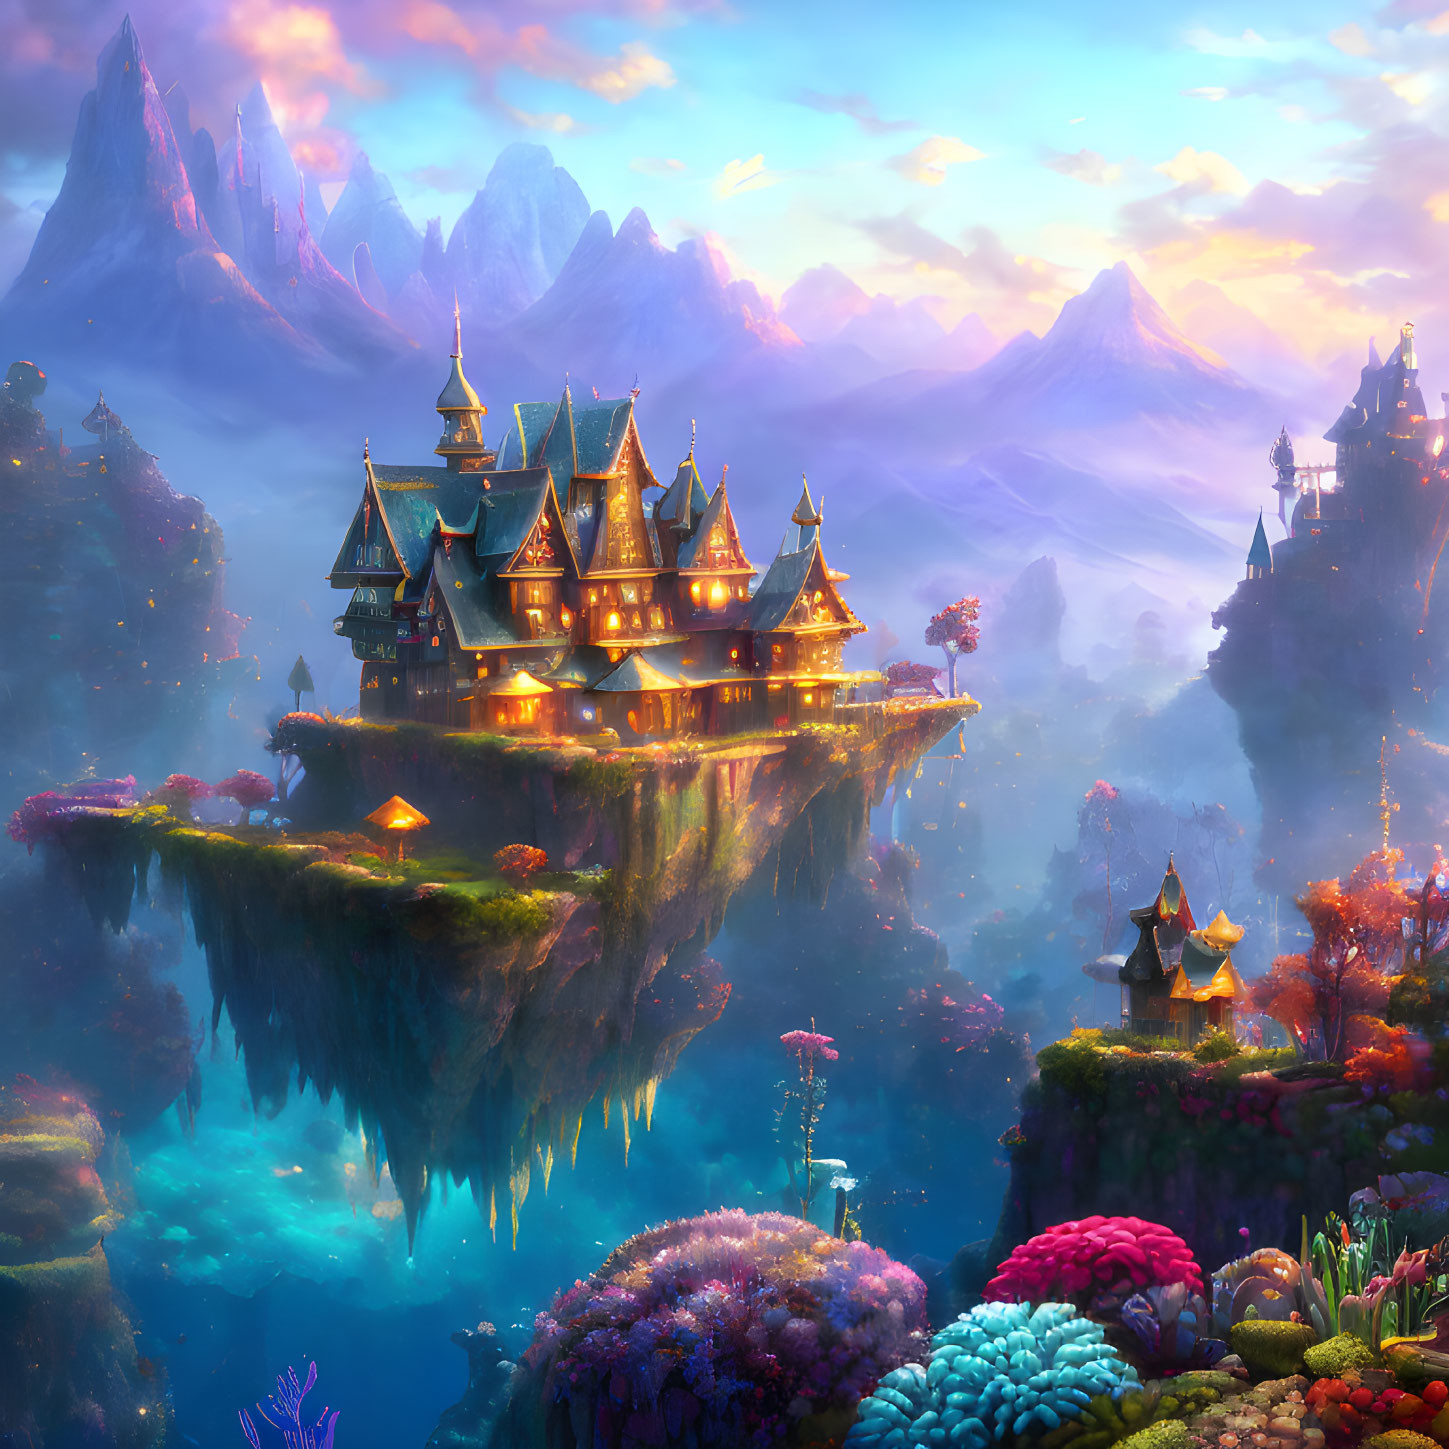 Majestic castle on floating island in fantastical landscape